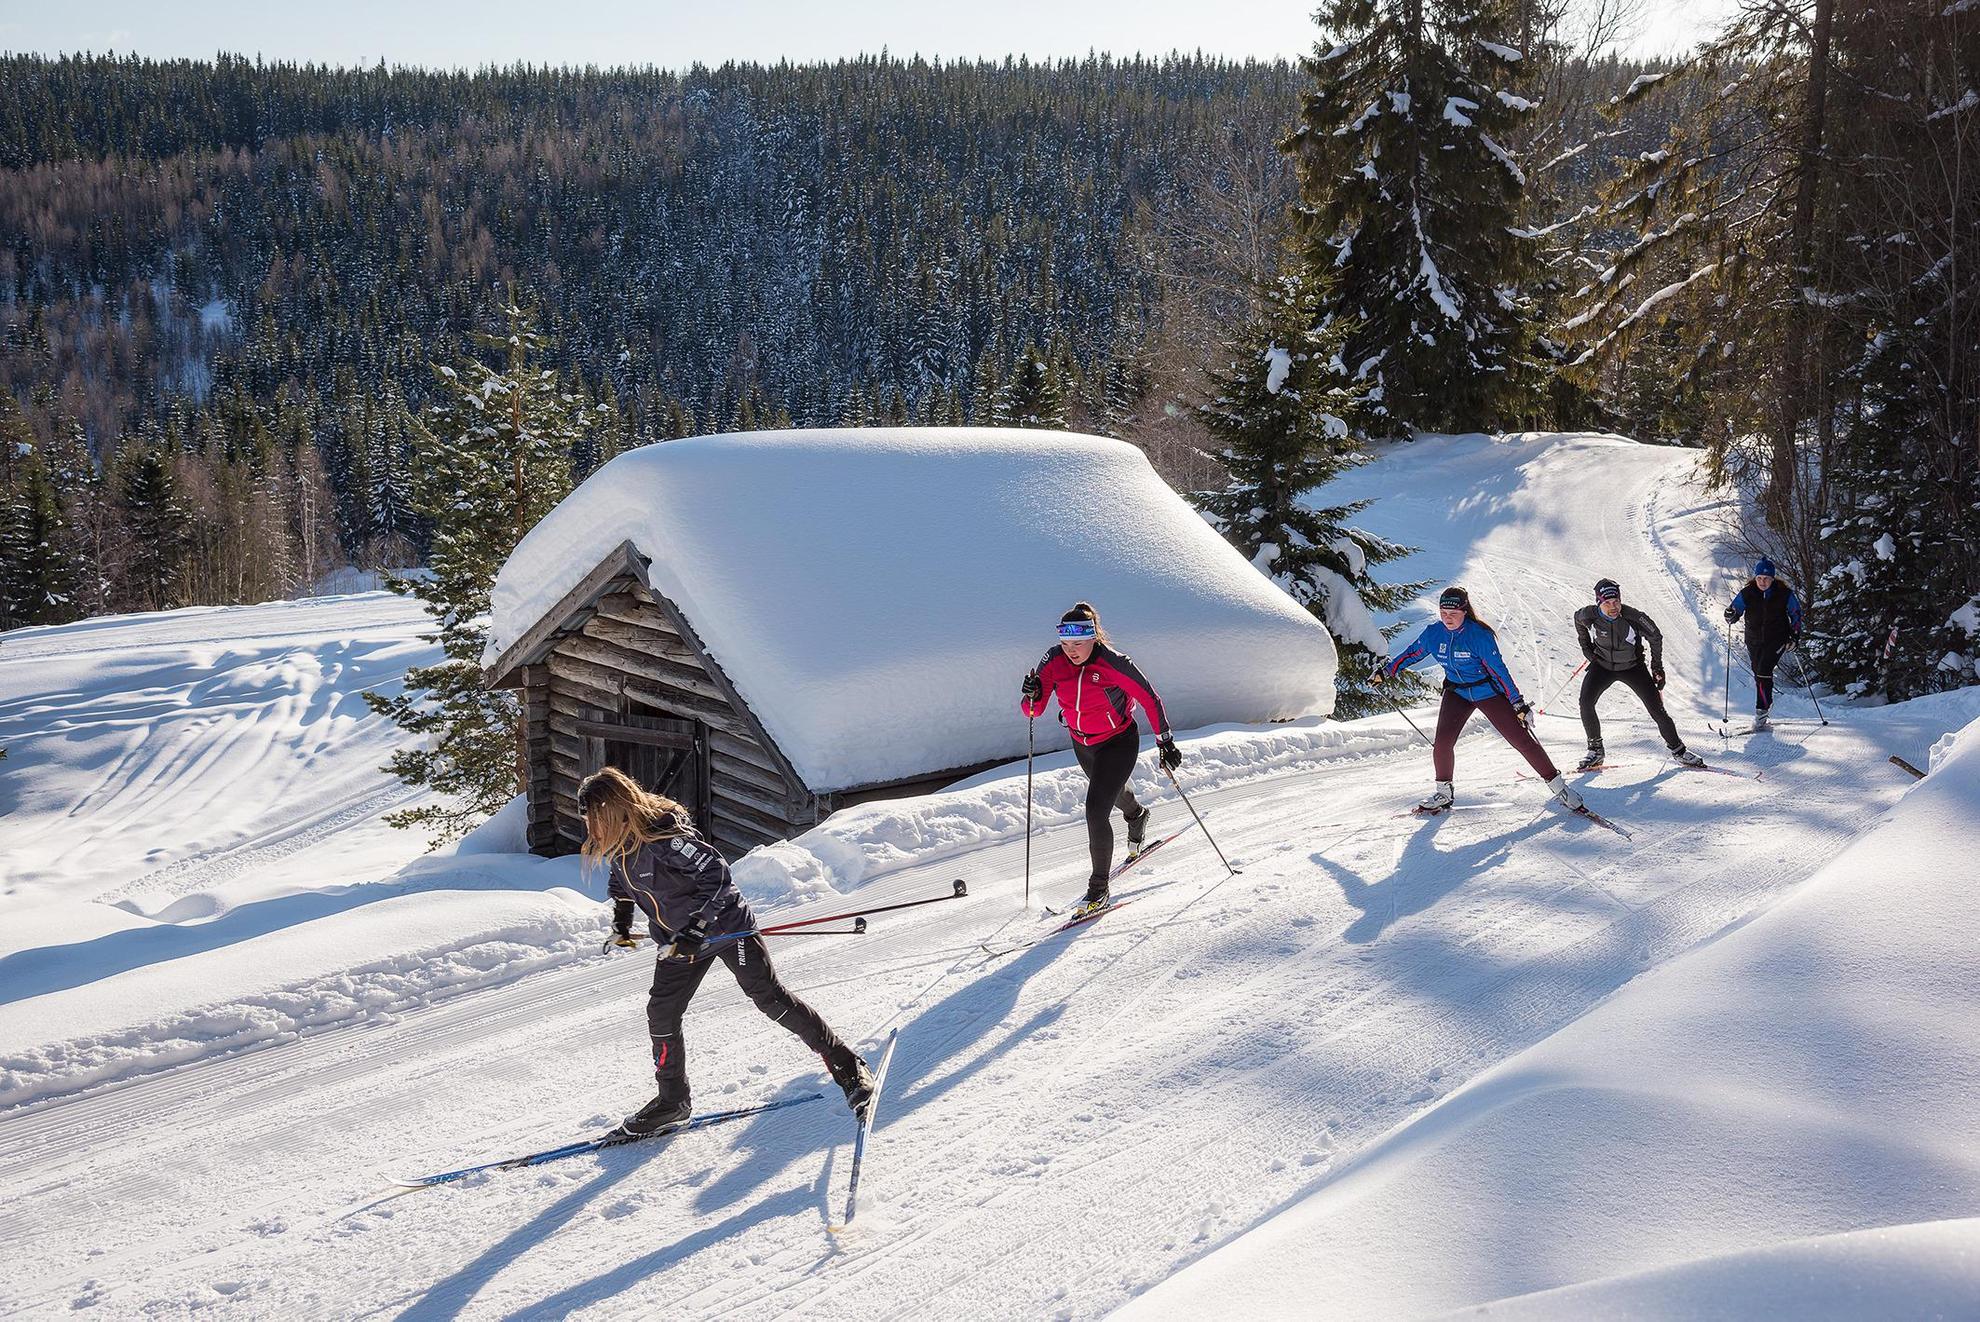 Cinq personnes font du ski de fond sur une colline par une journée ensoleillée d'hiver.